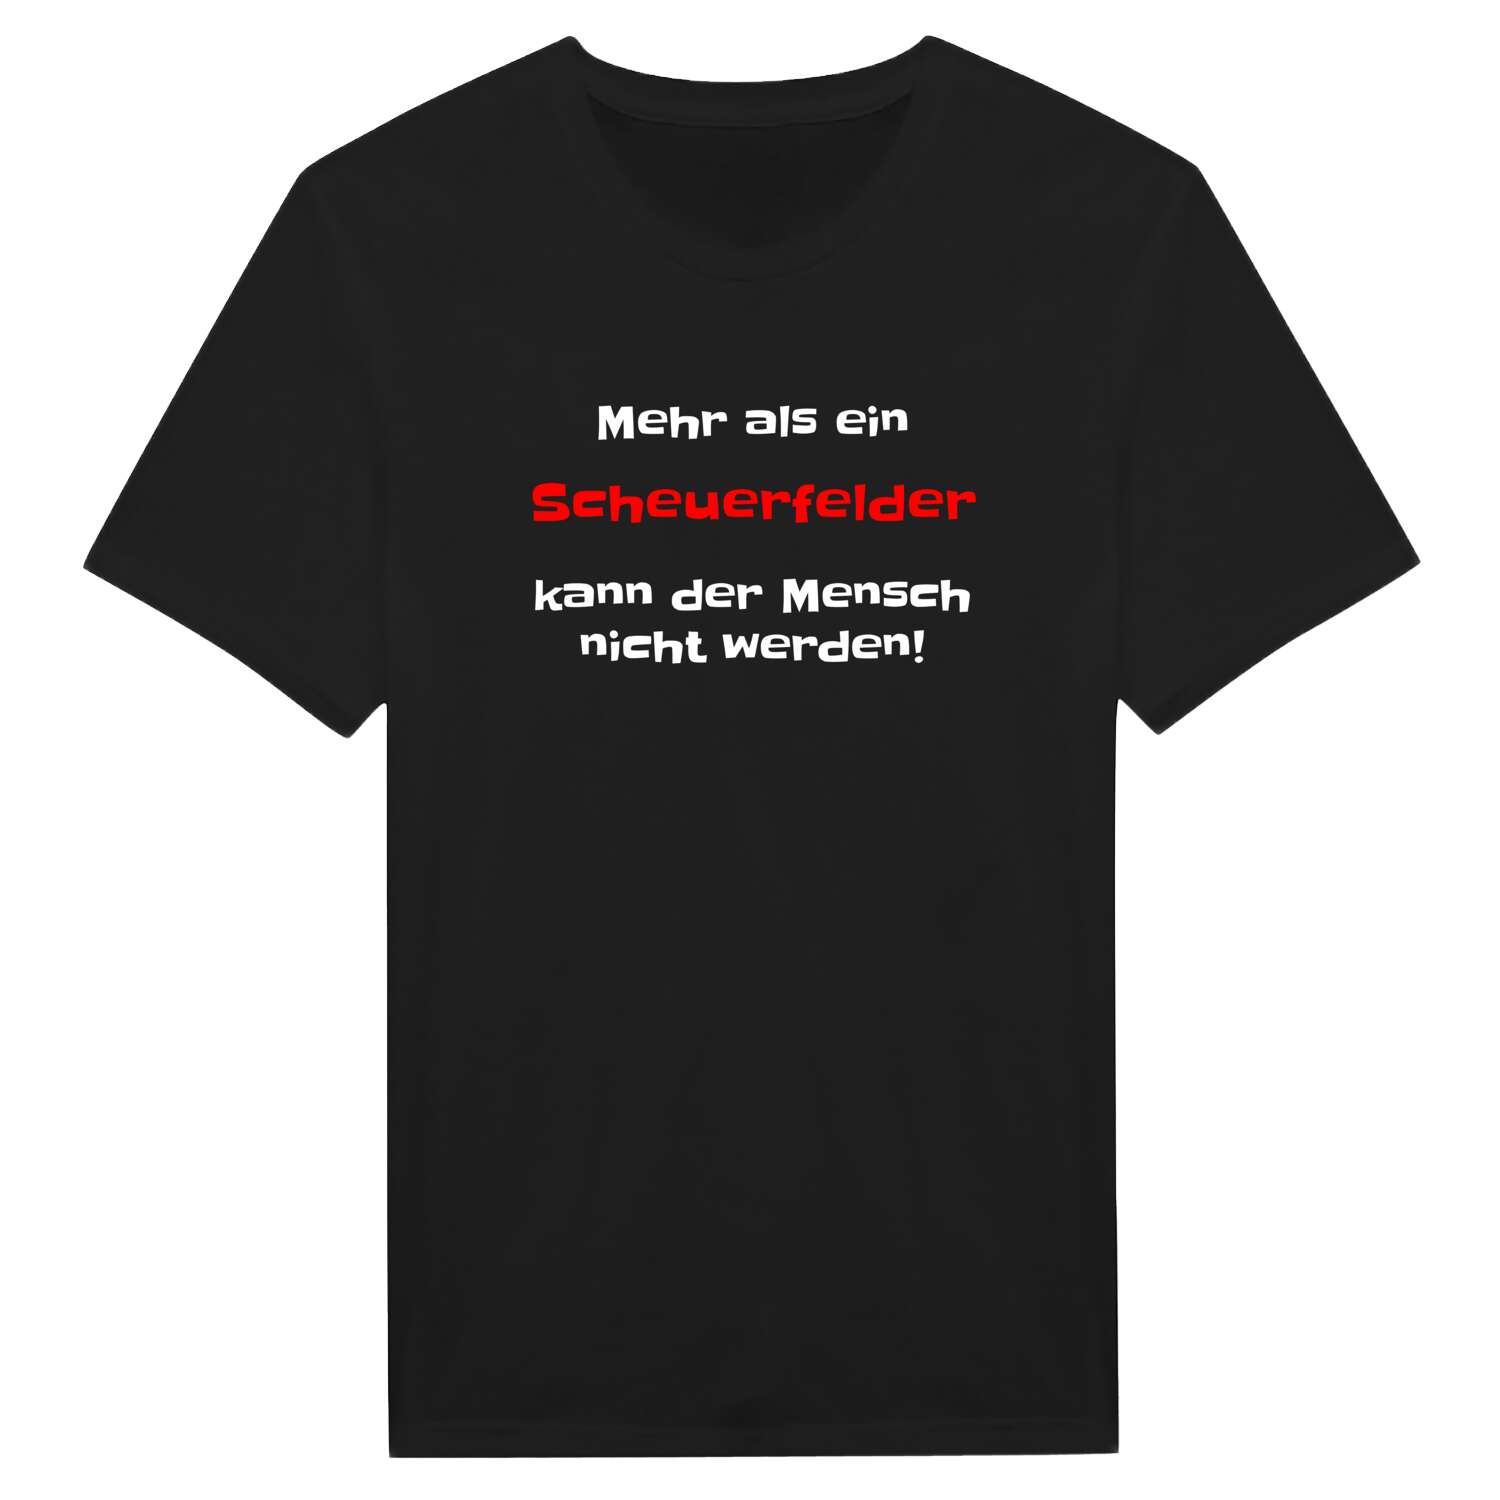 Scheuerfeld T-Shirt »Mehr als ein«